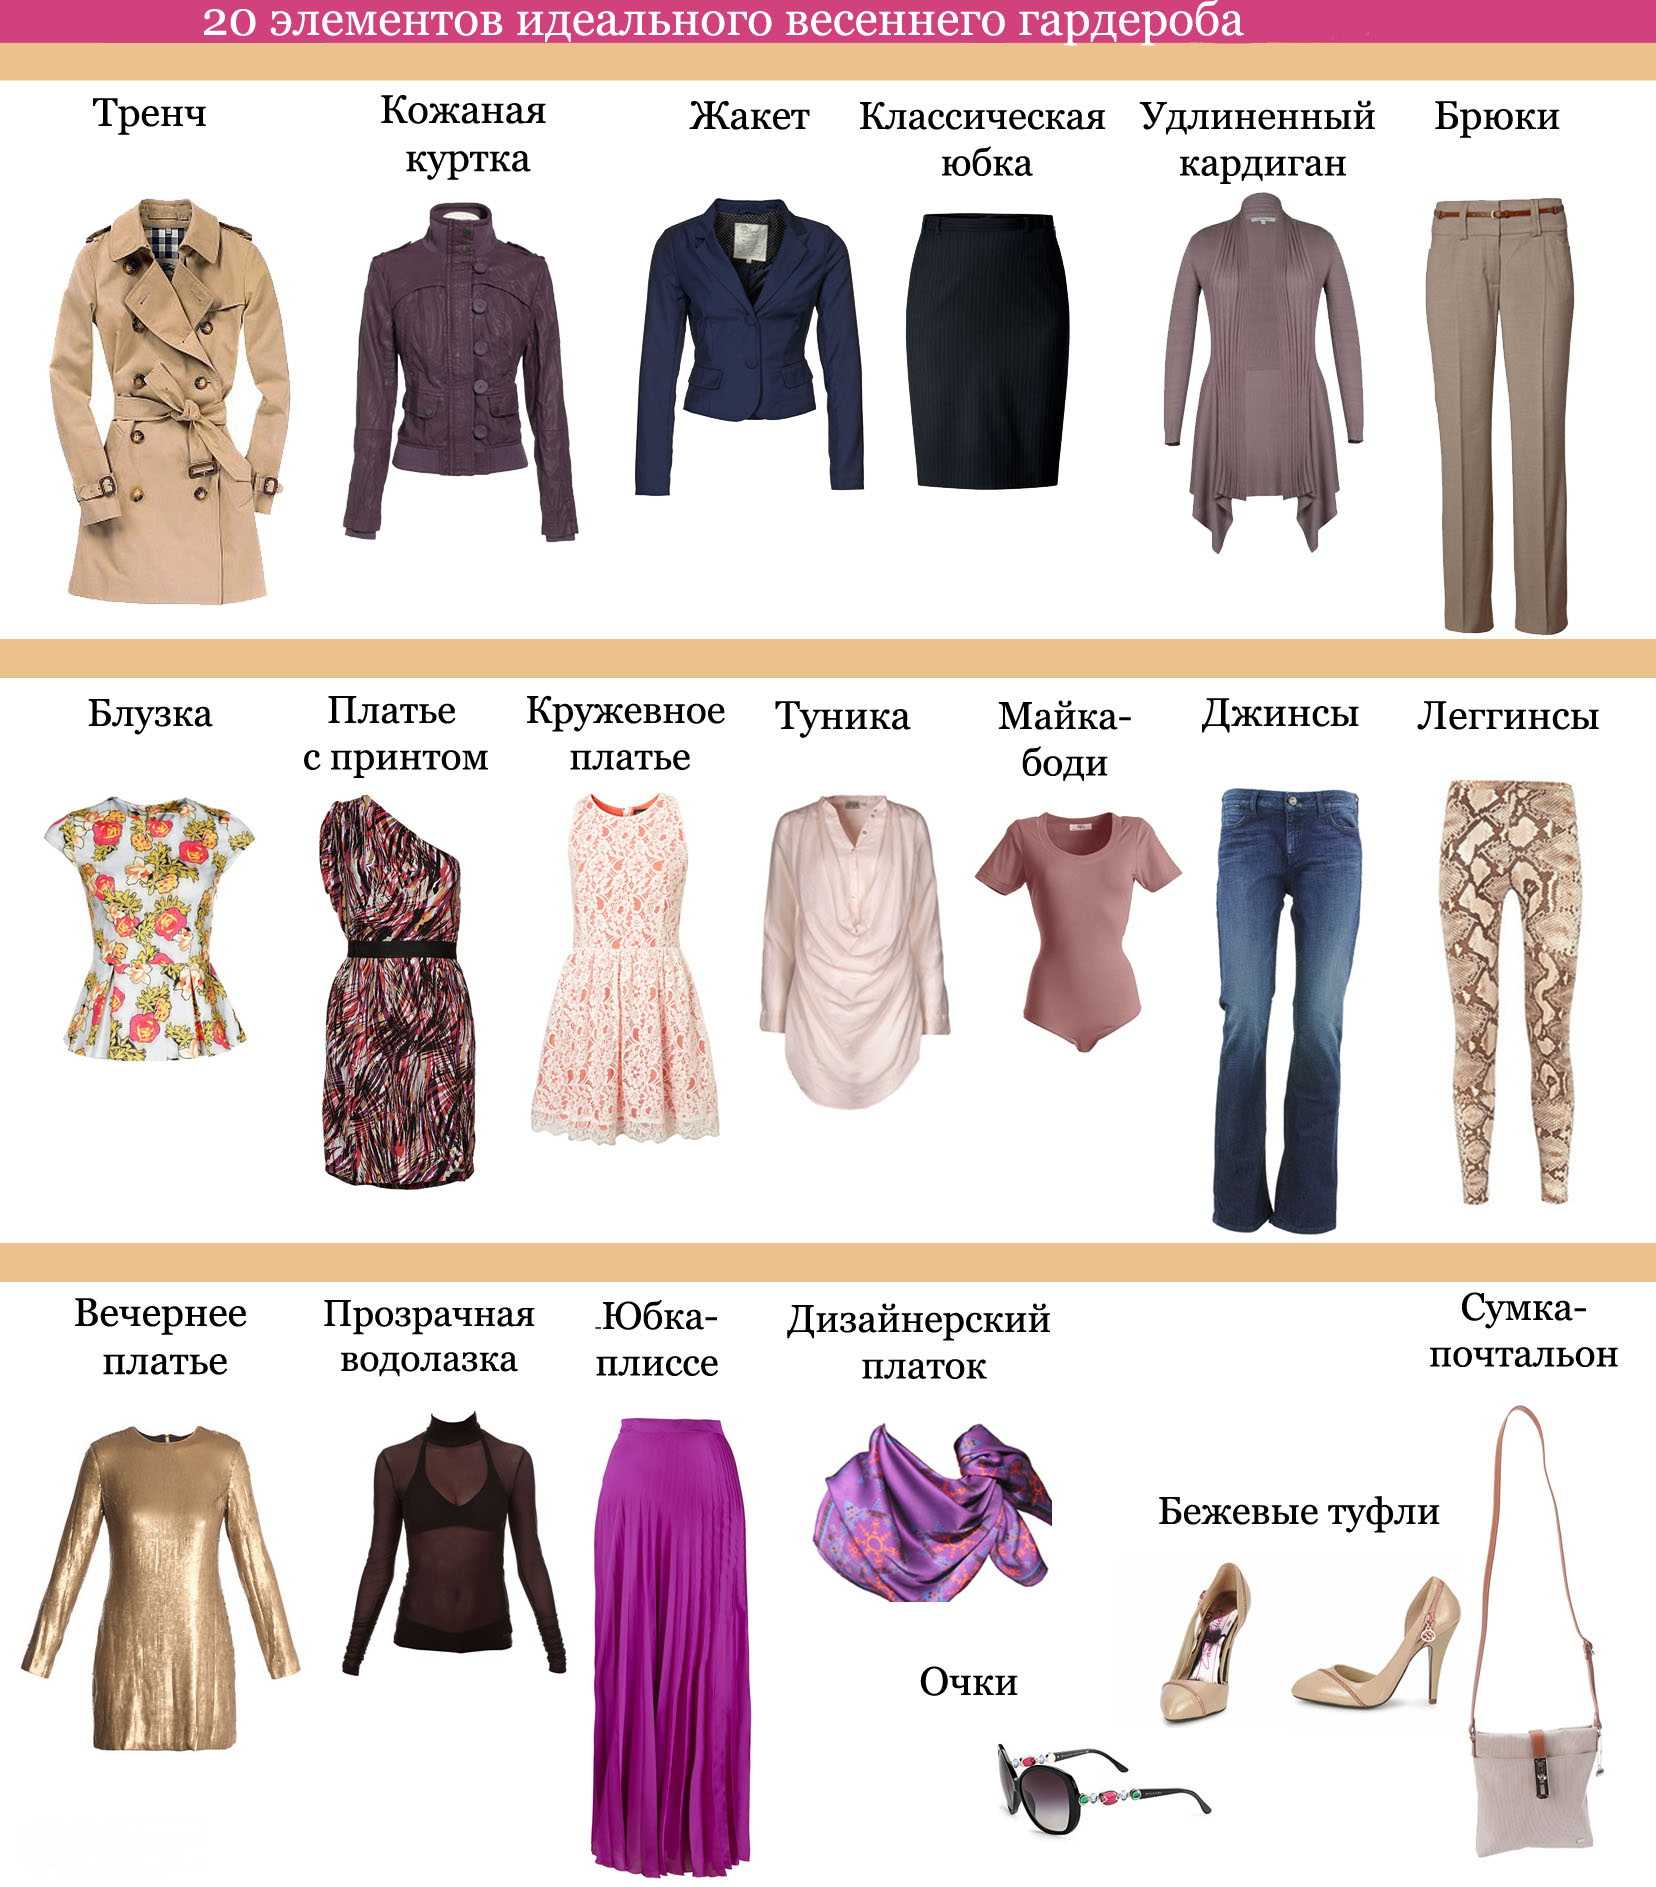 Стили женской одежды: названия, фото и описания